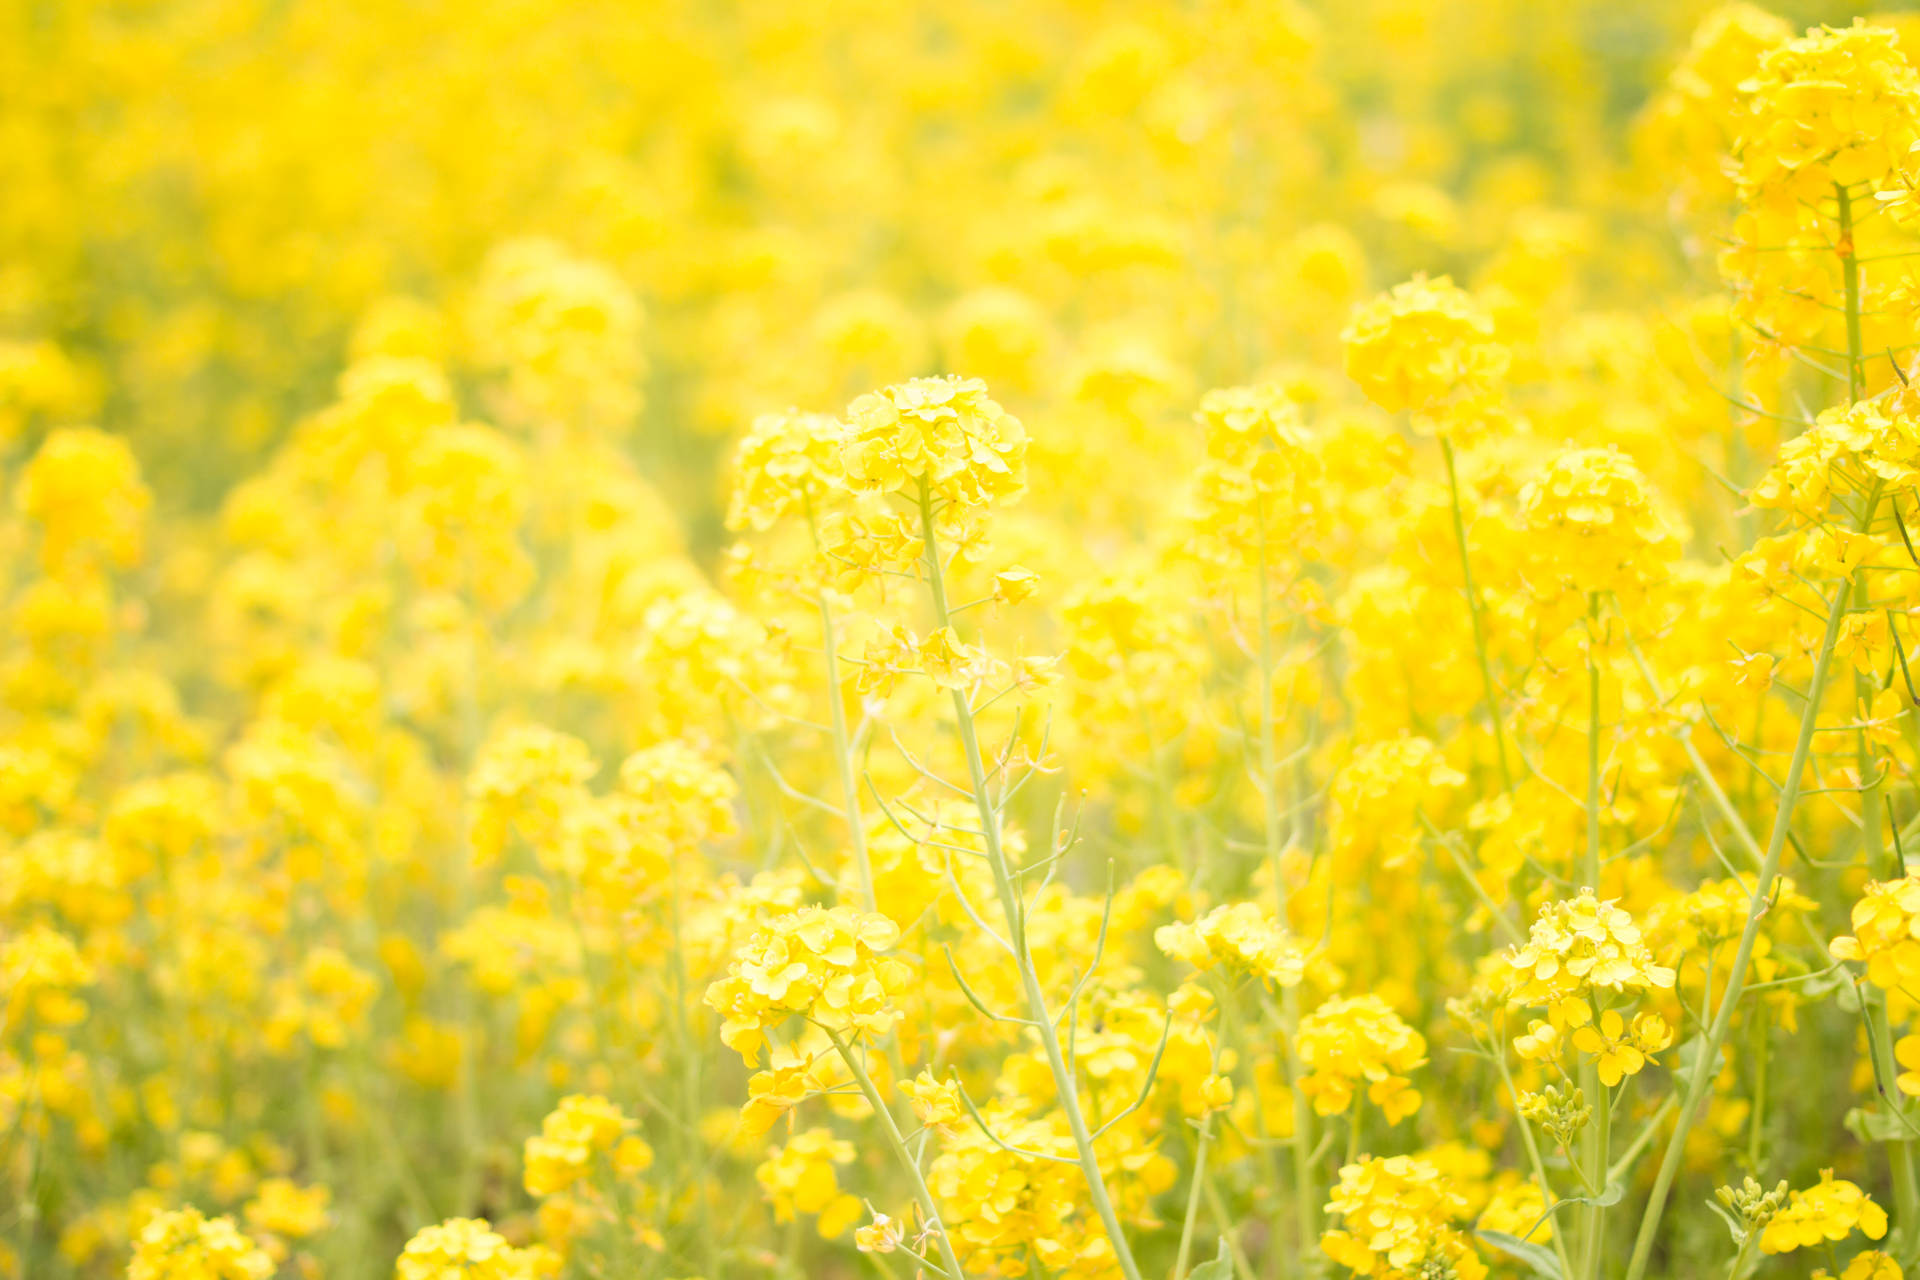 Dreamy Yellow Flower Field